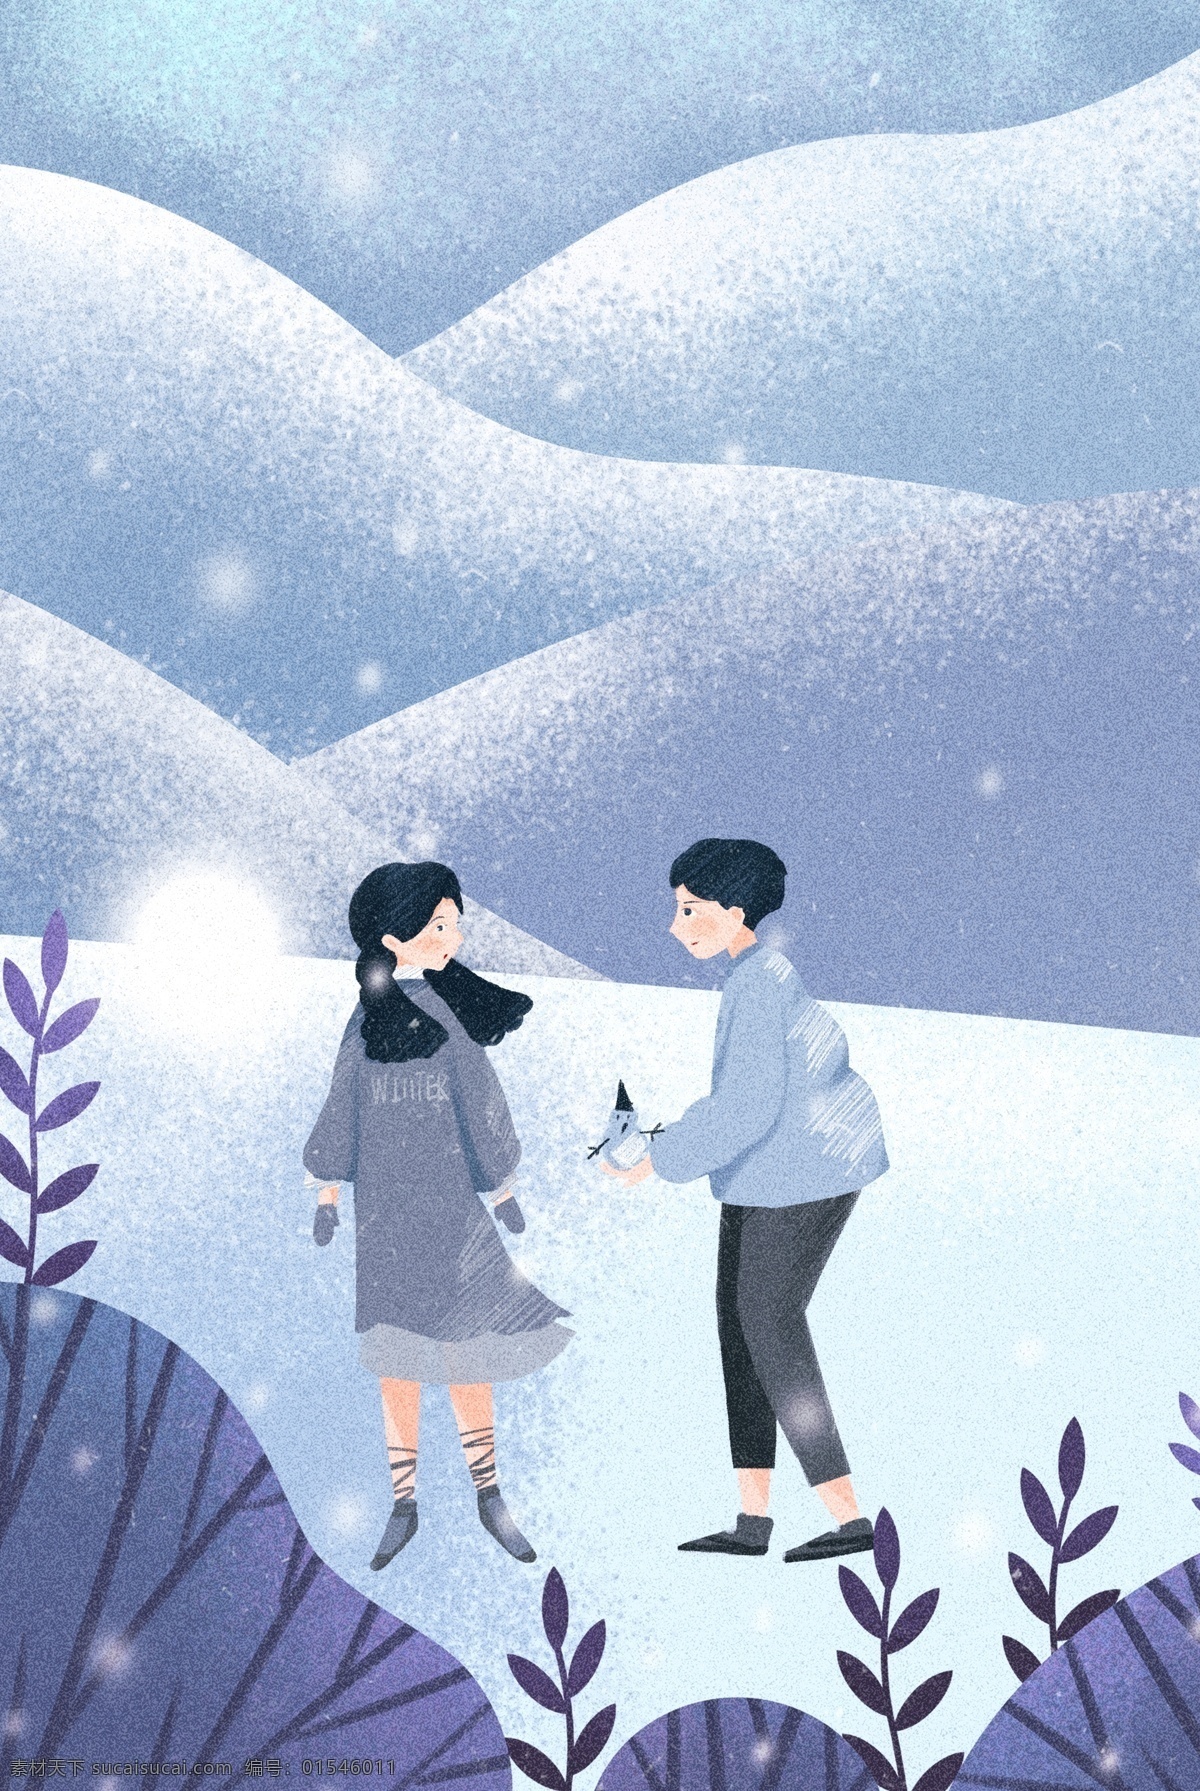 冬日 情侣 出行 看 风景 浪漫 海报 冬天 雪景 温暖 植物 户外出行 插画风 促销海报